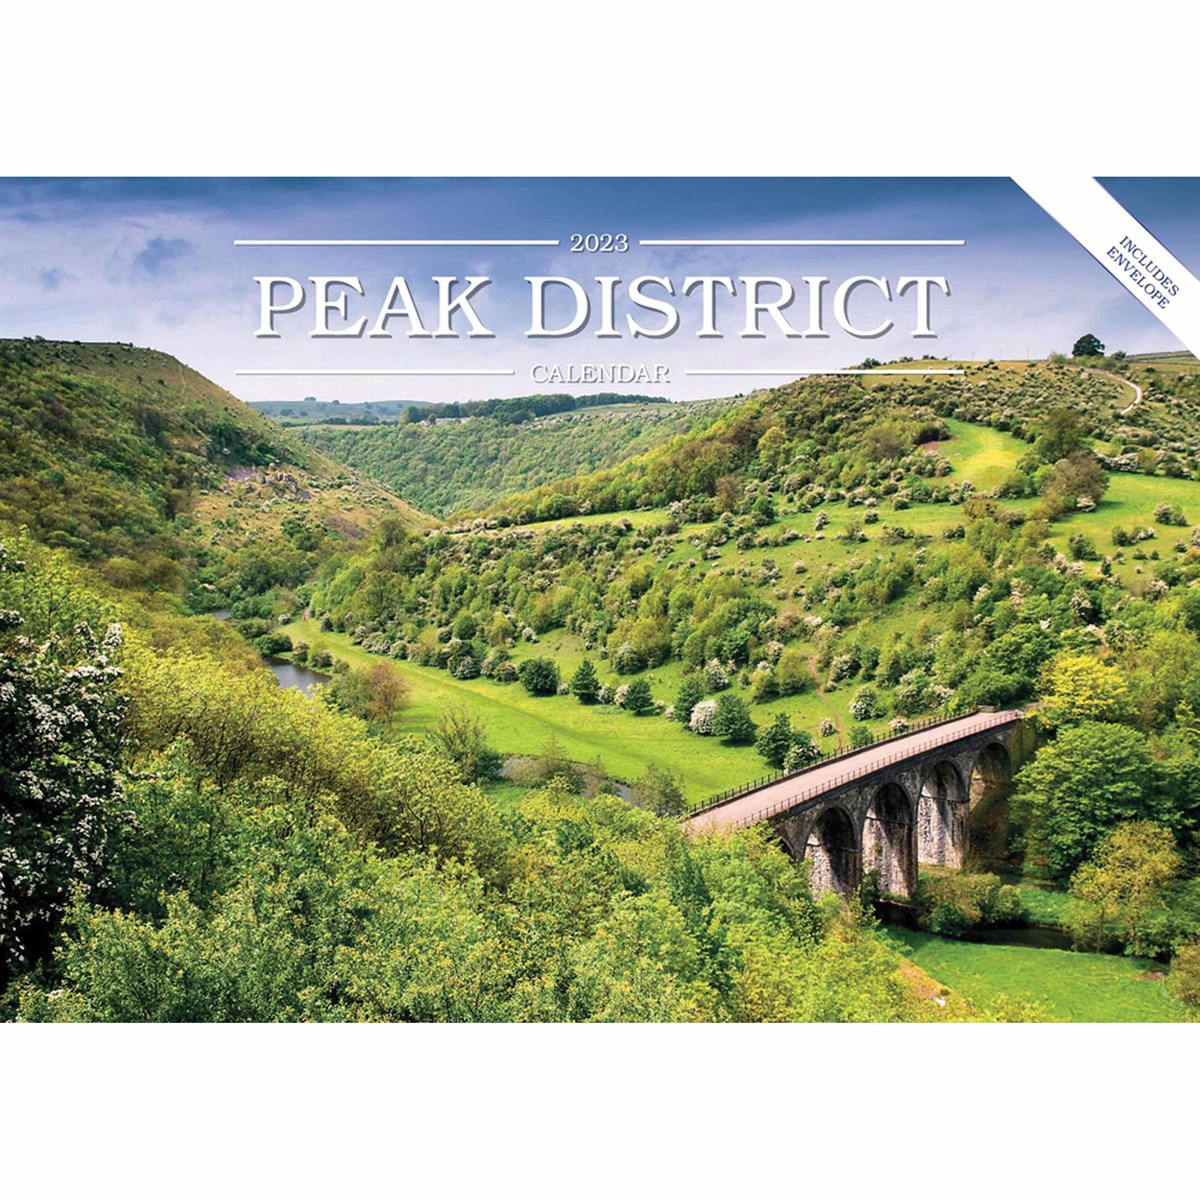 Peak District A5 2023 Calendars